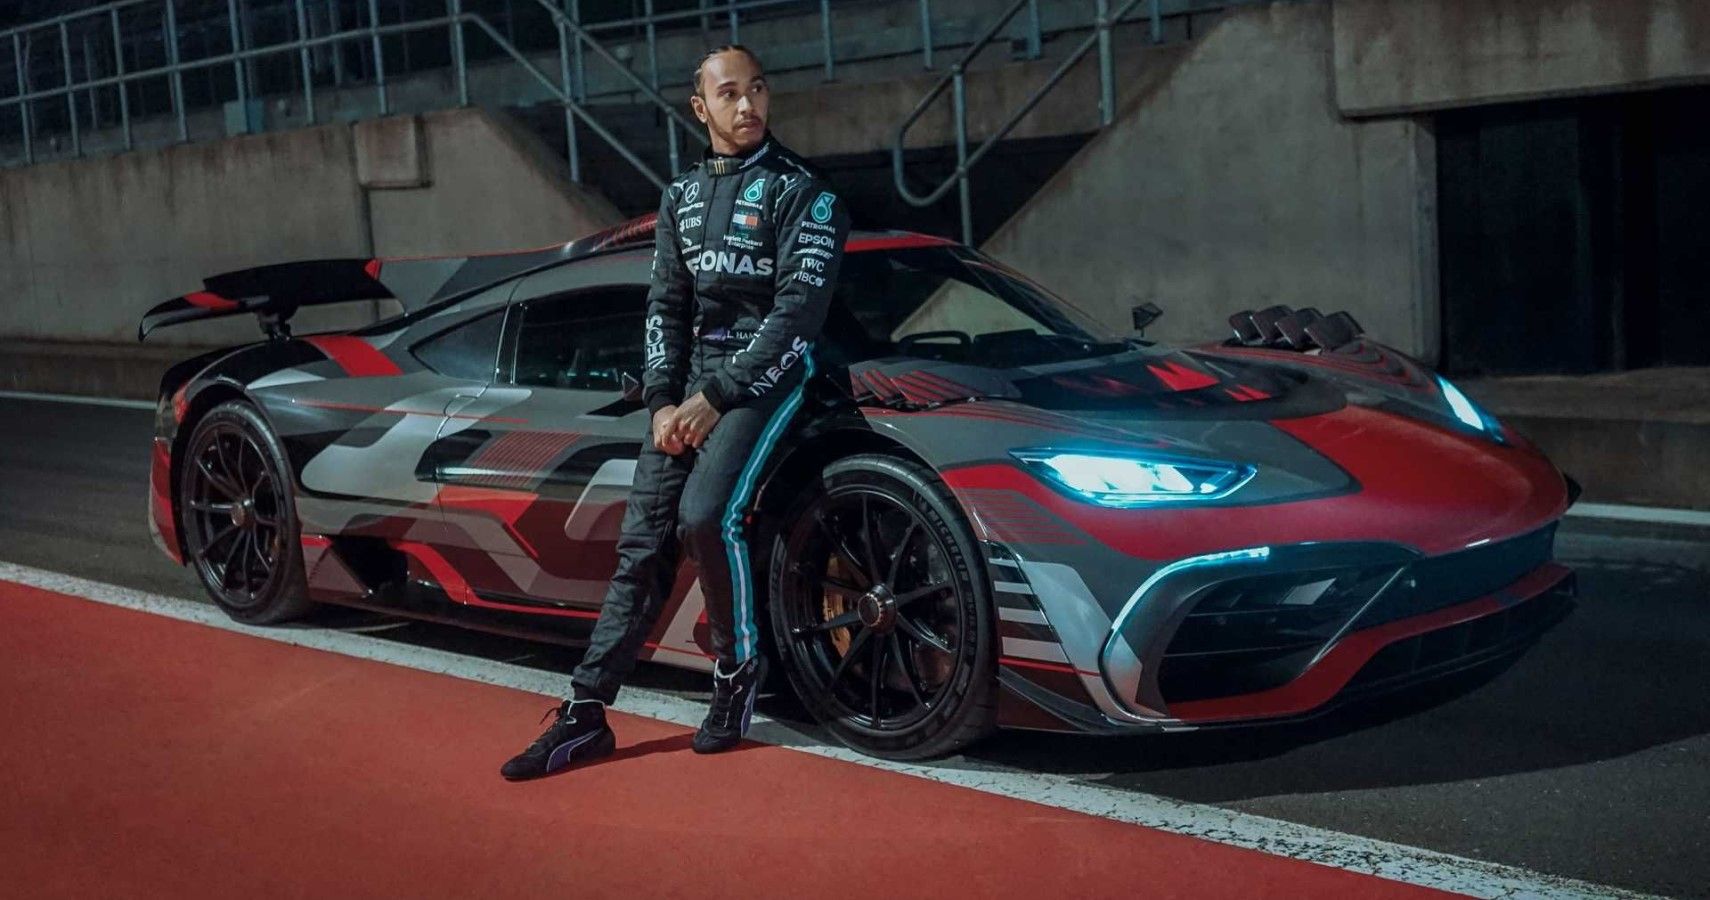 Lewis Hamilton posing next to his Mercedes AMG One